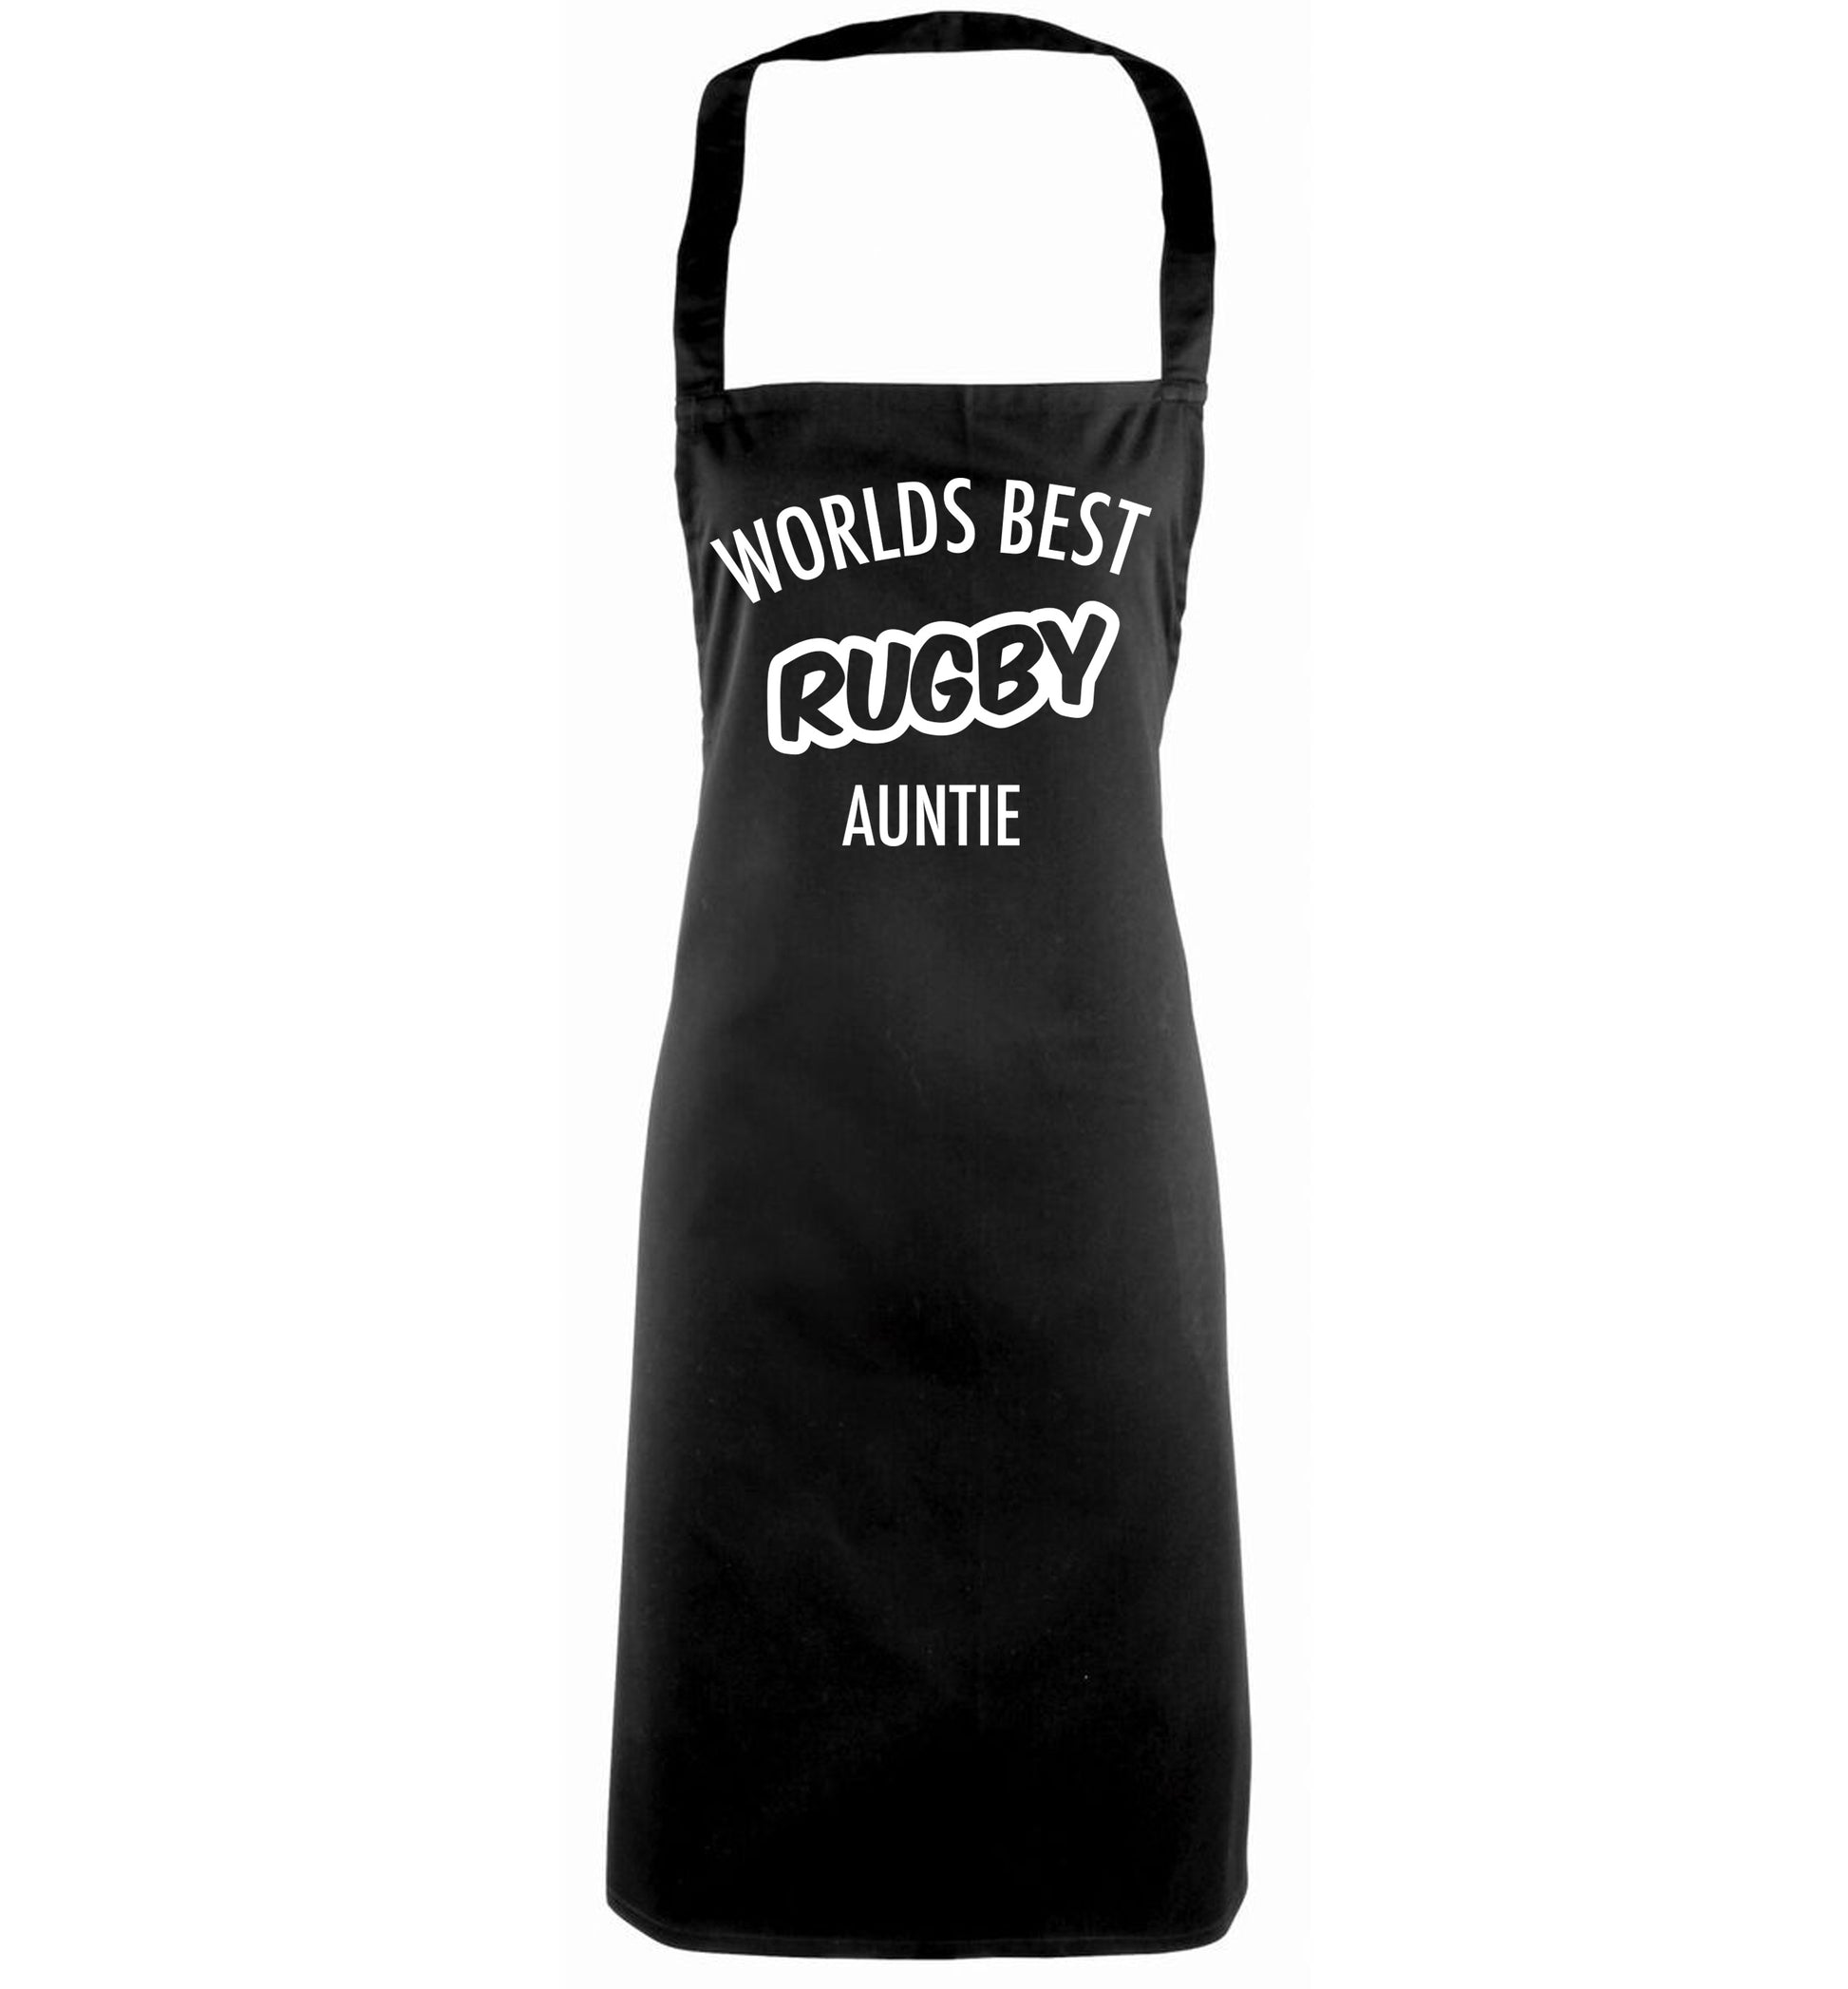 Worlds best rugby auntie black apron